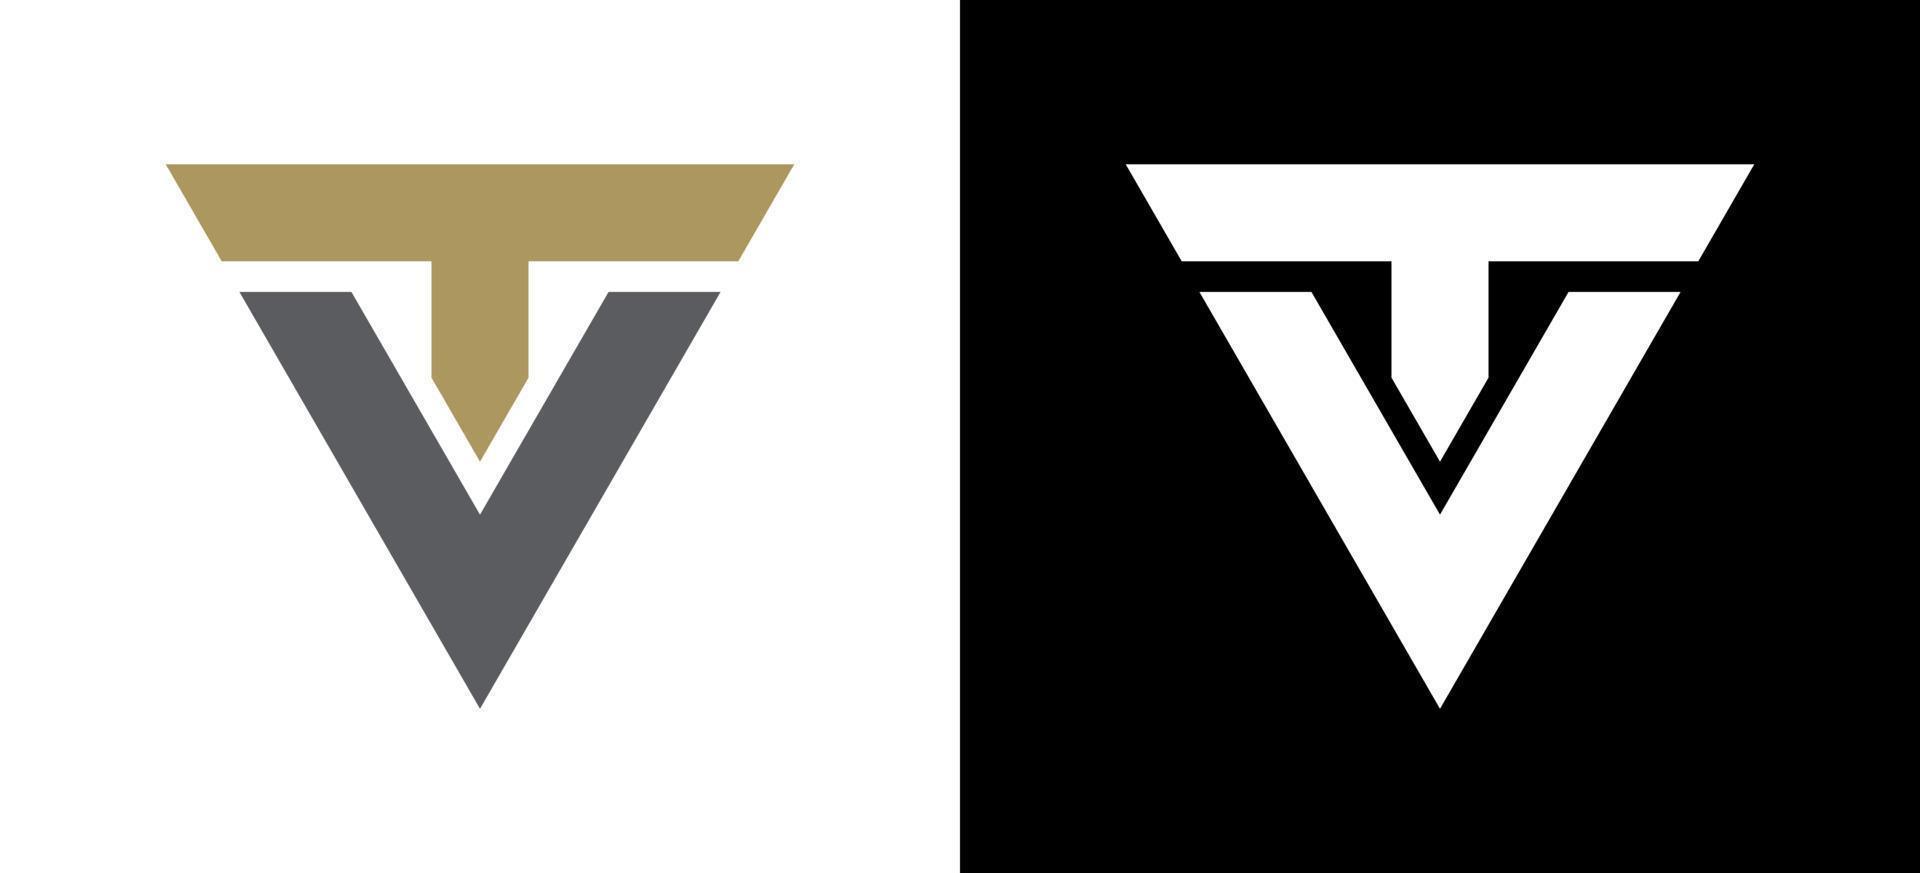 Initial letter TV logo design vector